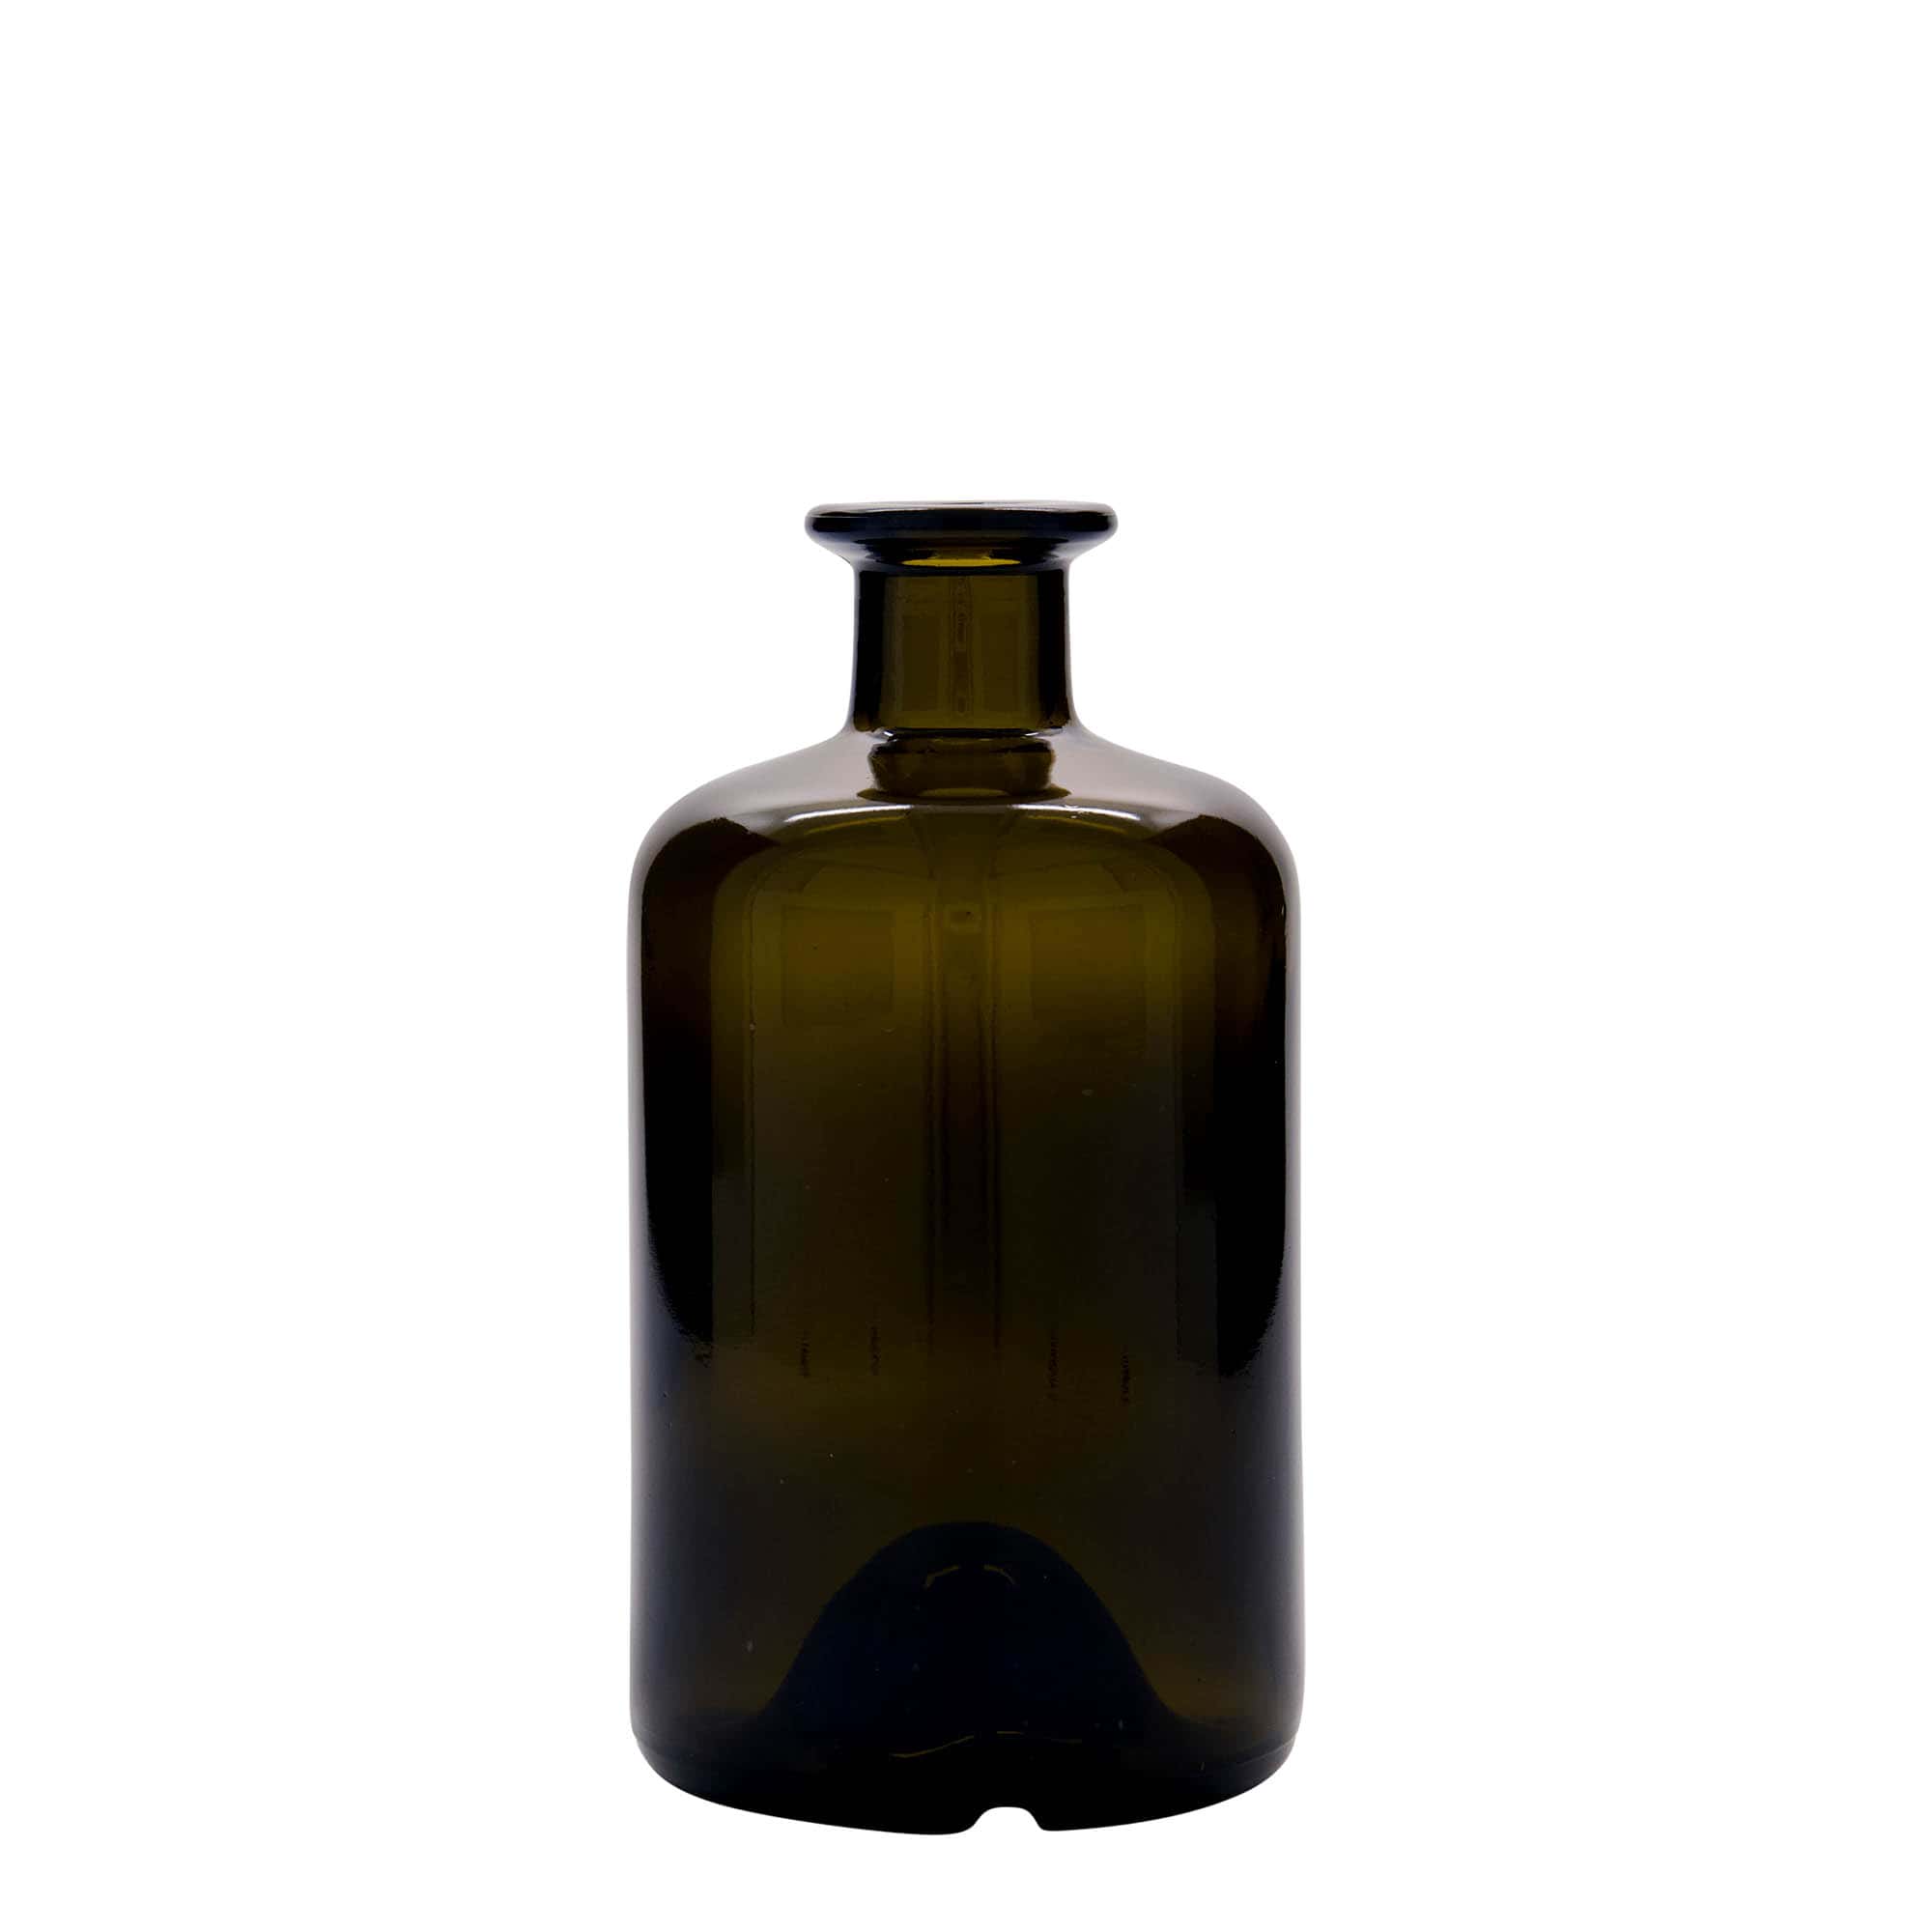 500 ml butelka szklana apteczna, kolor zielony antyczny, zamknięcie: korek